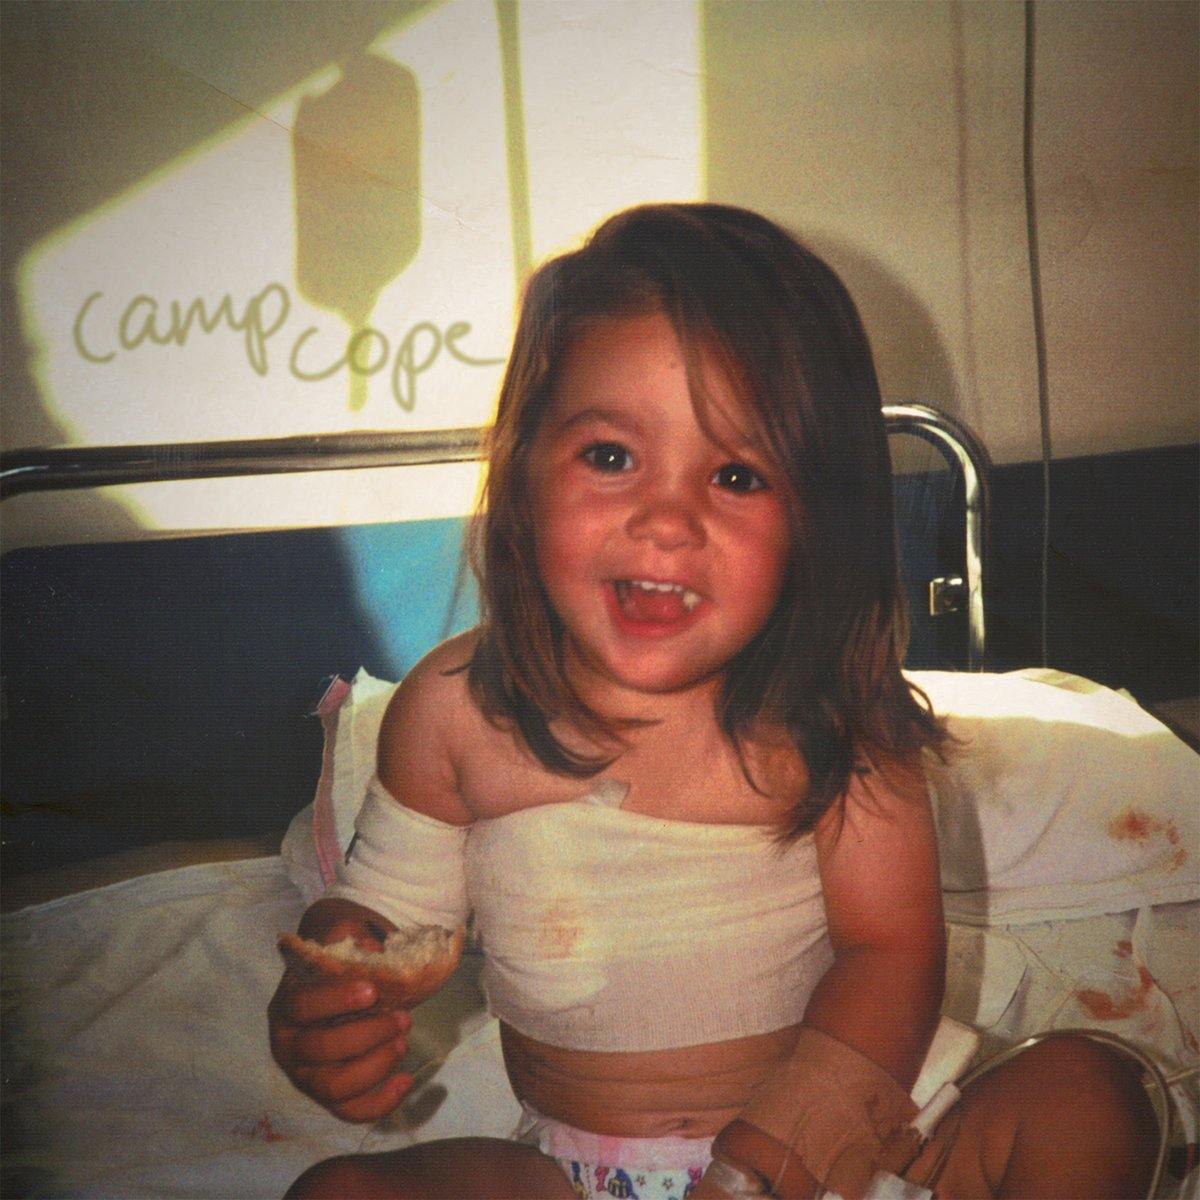 Buy – Camp Cope "Camp Cope" 12" – Band & Music Merch – Cold Cuts Merch